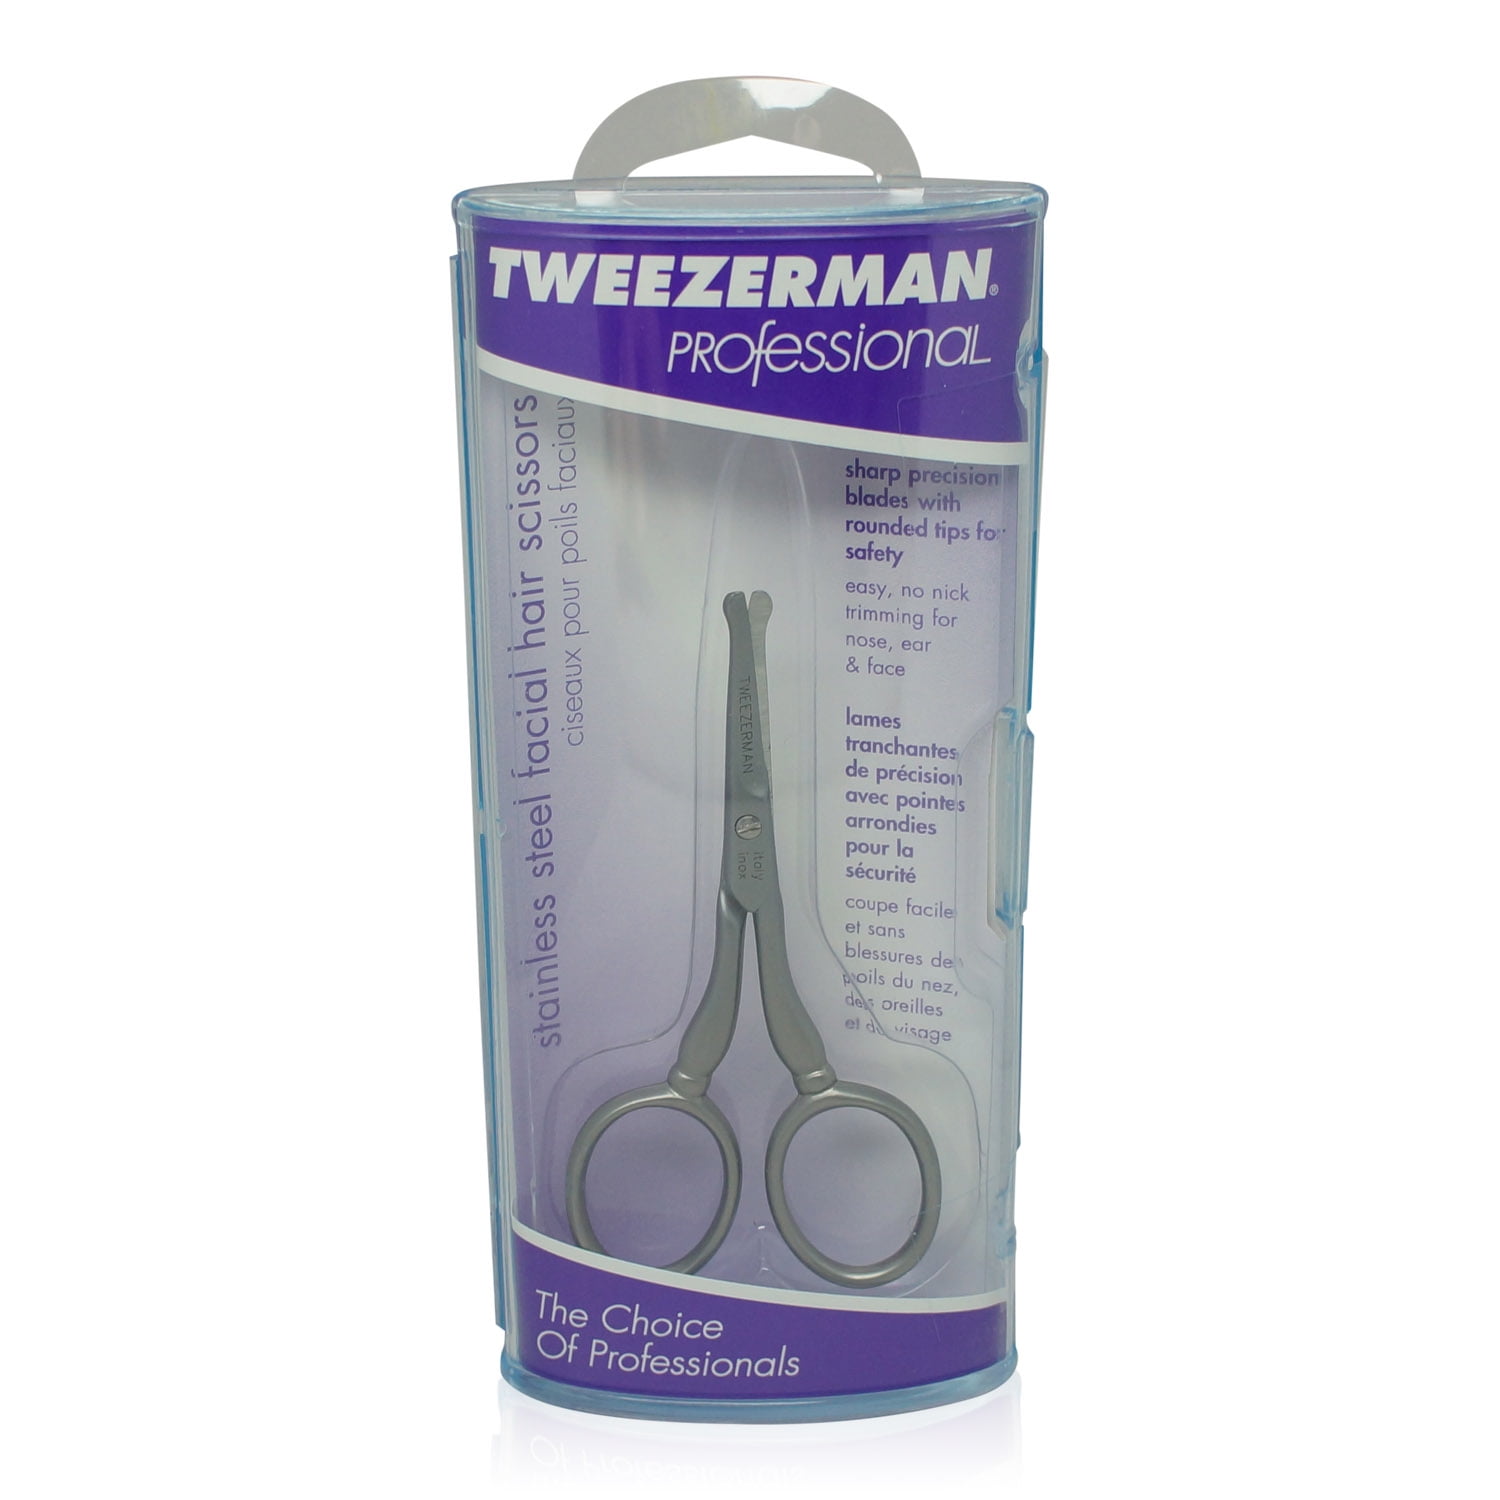 Tweezerman Facial Hair Scissors